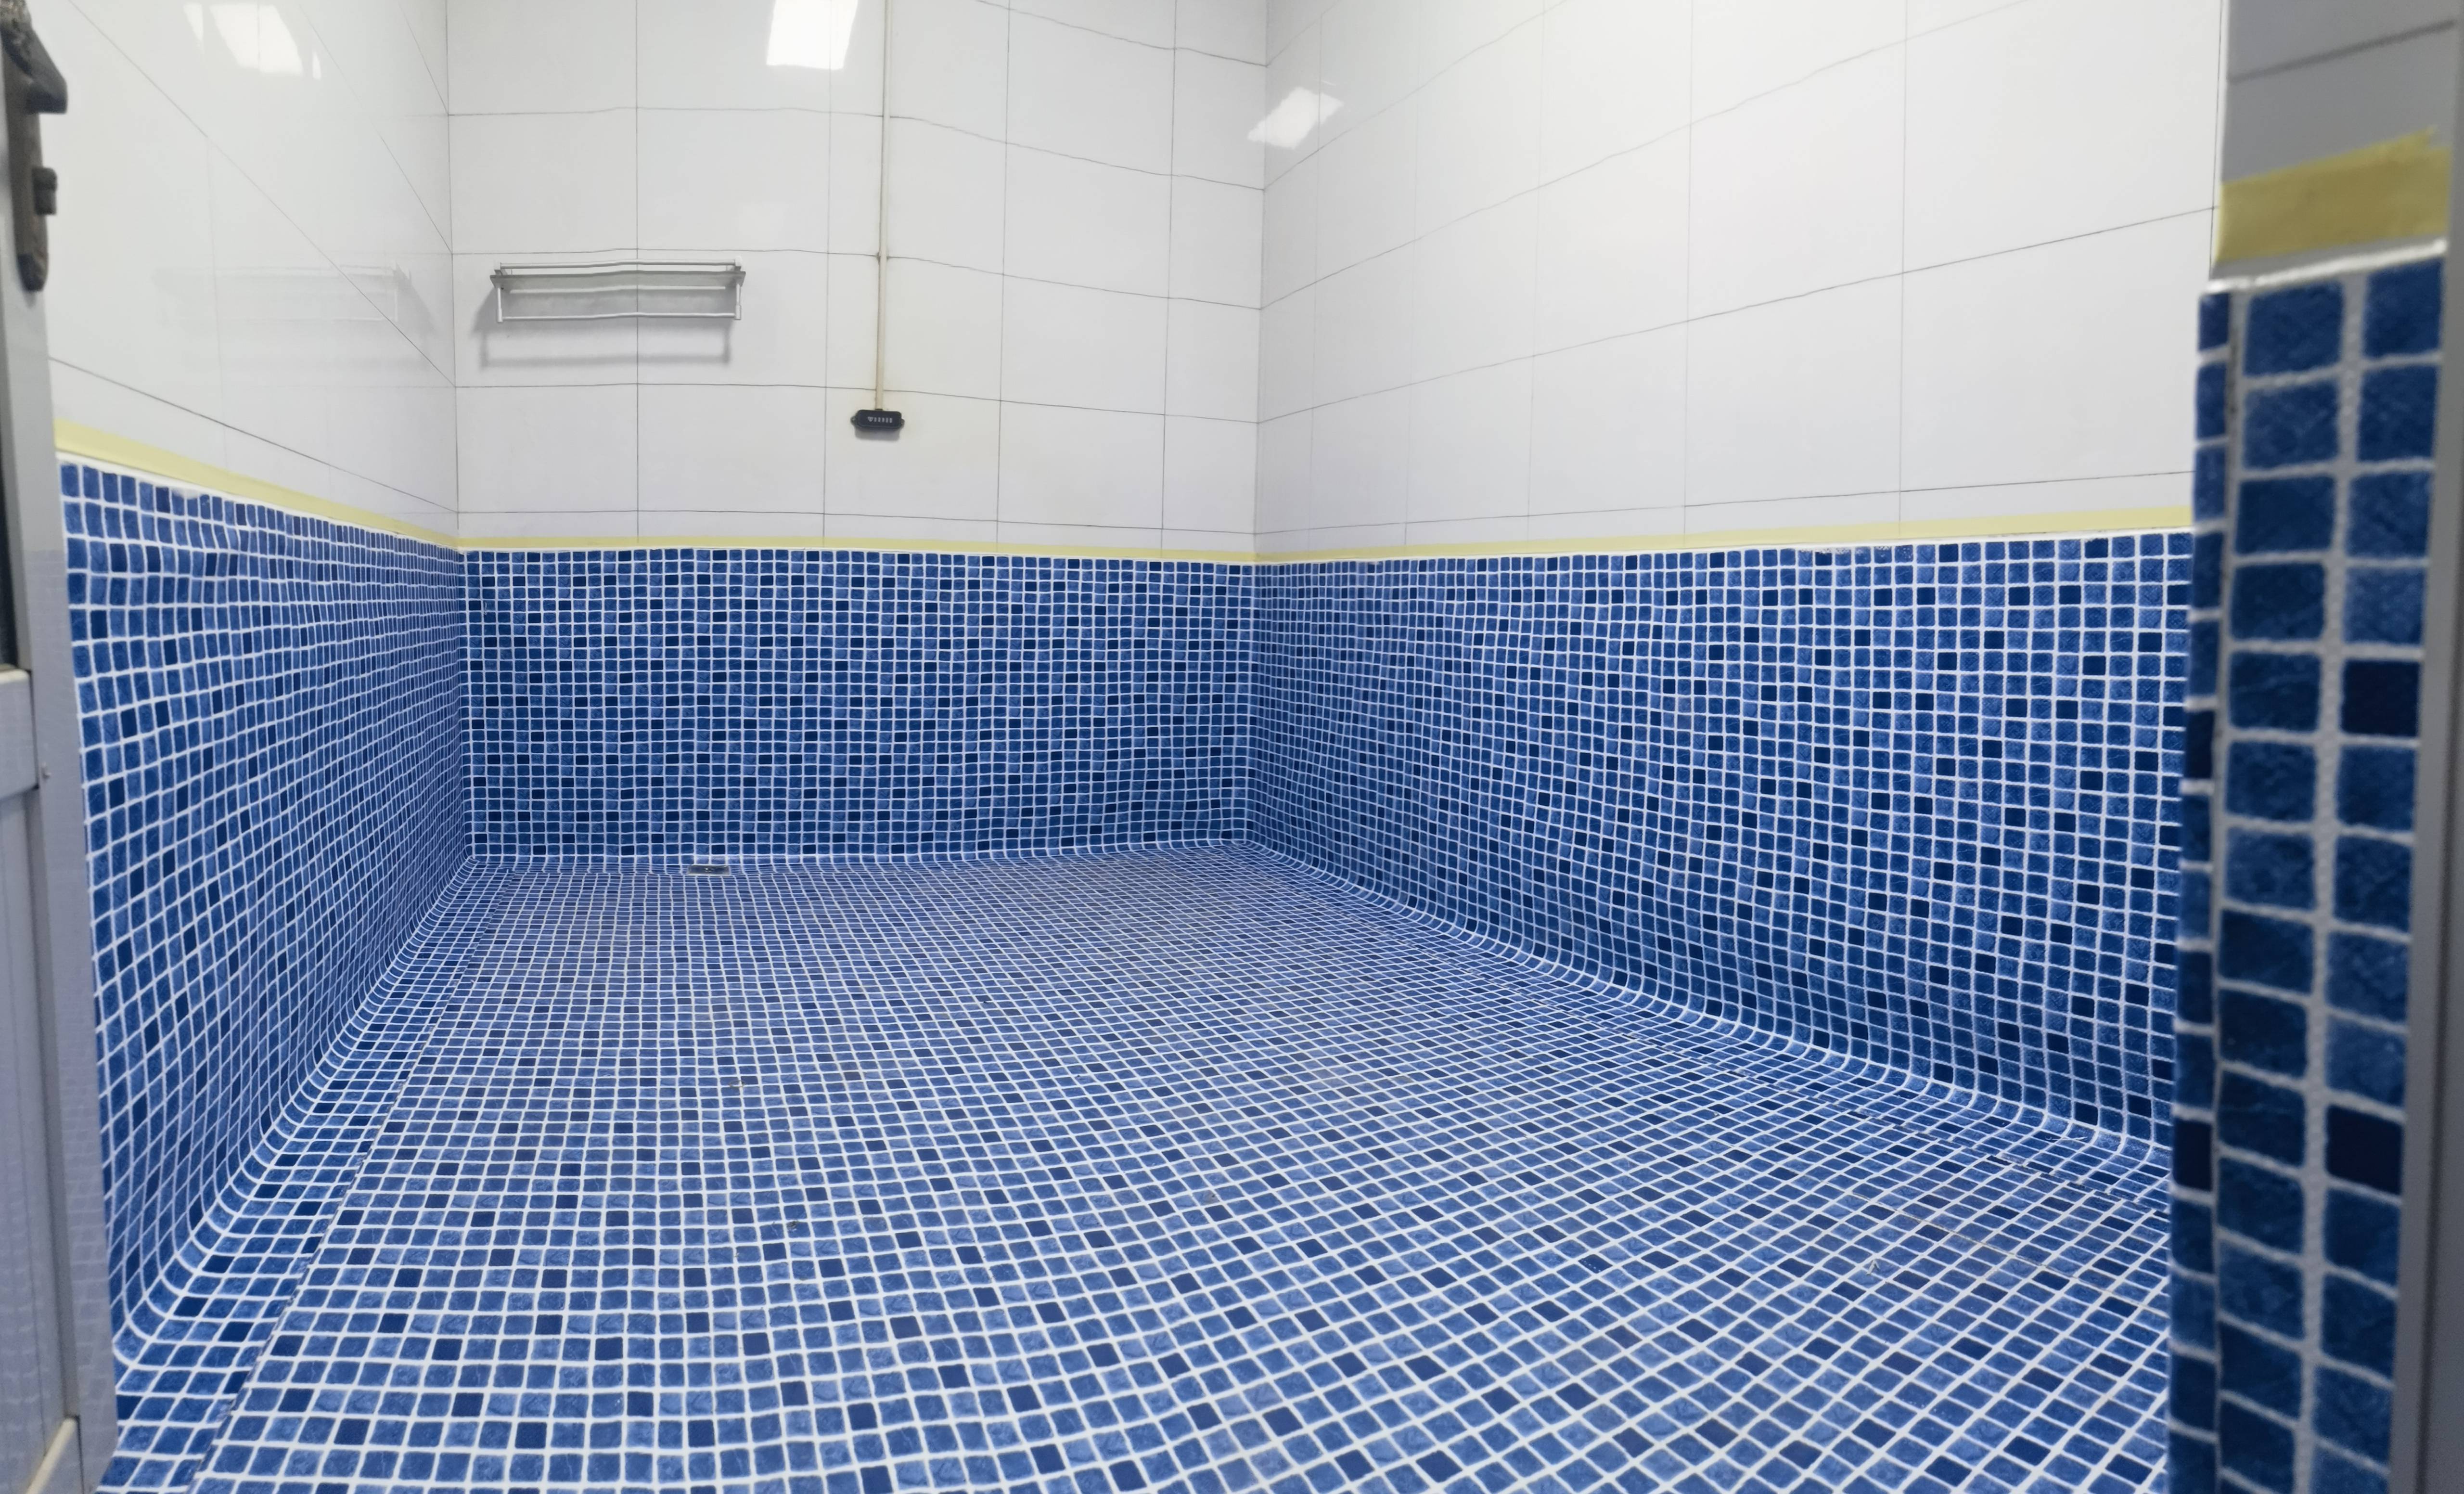 浴室泳池胶膜 游泳池水上乐园系统 马赛克胶膜